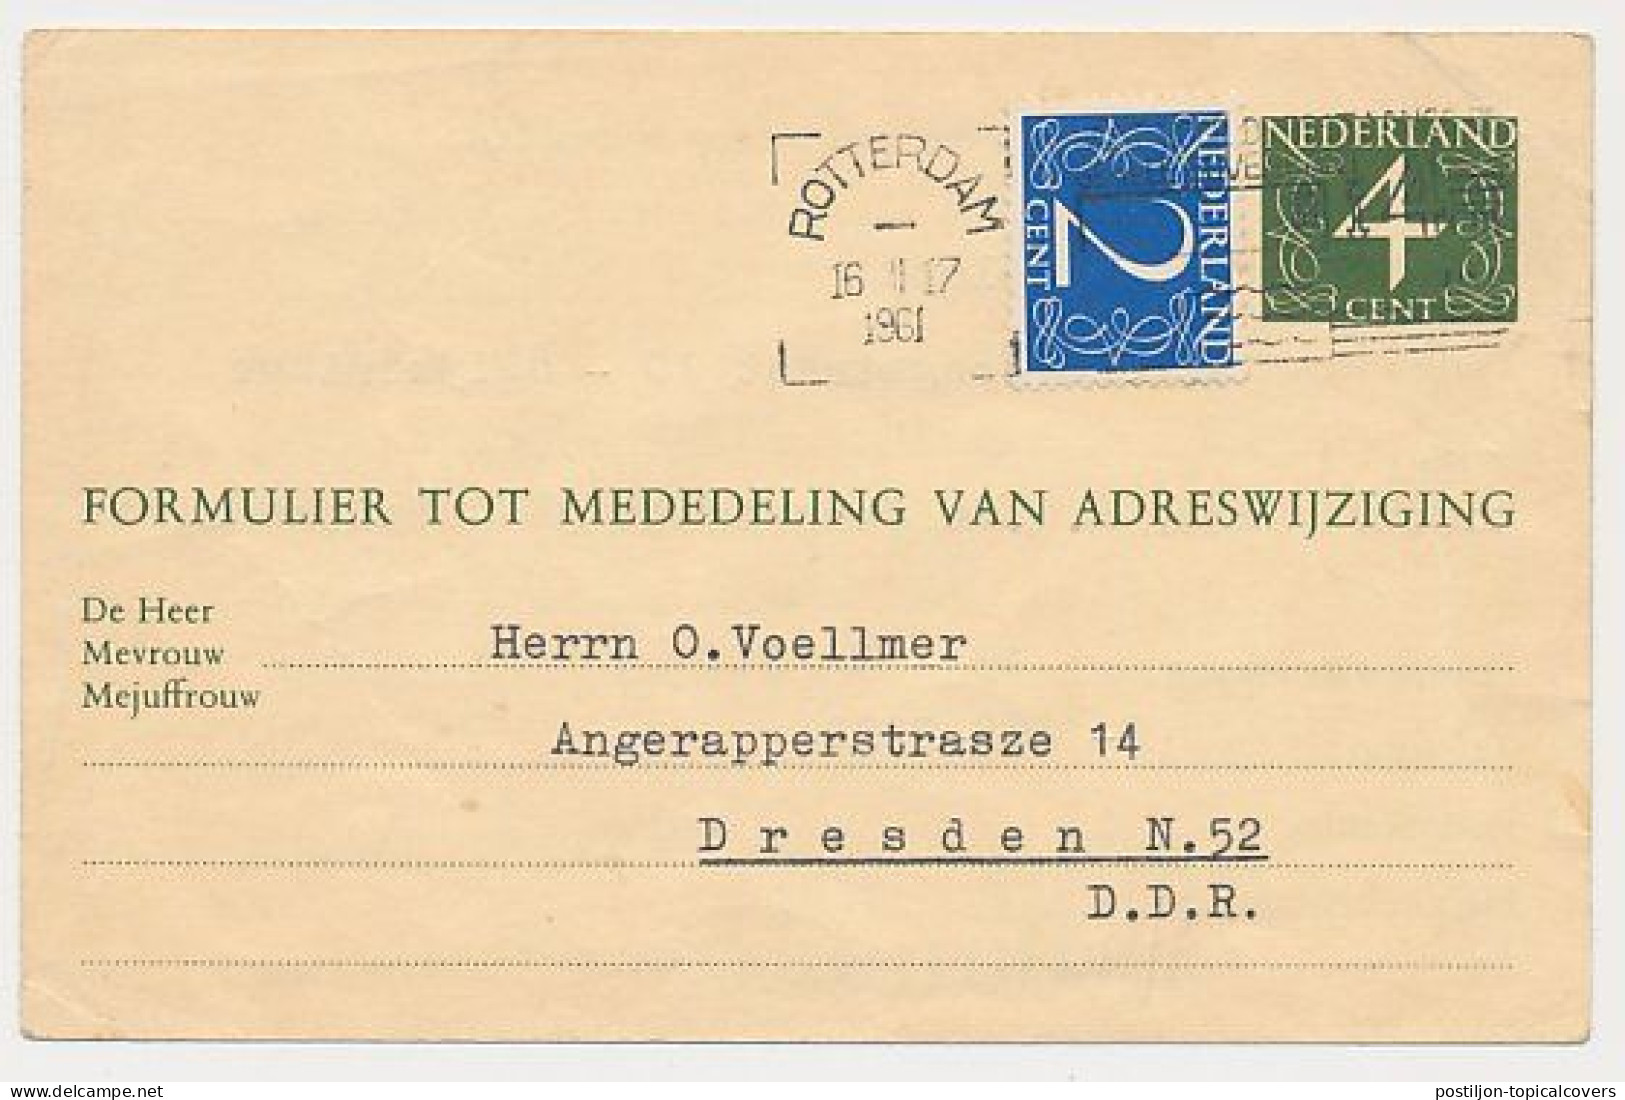 Verhuiskaart G.26 Bijfrankering Rotterdam  - DDR / Duitsland 1961 - Brieven En Documenten